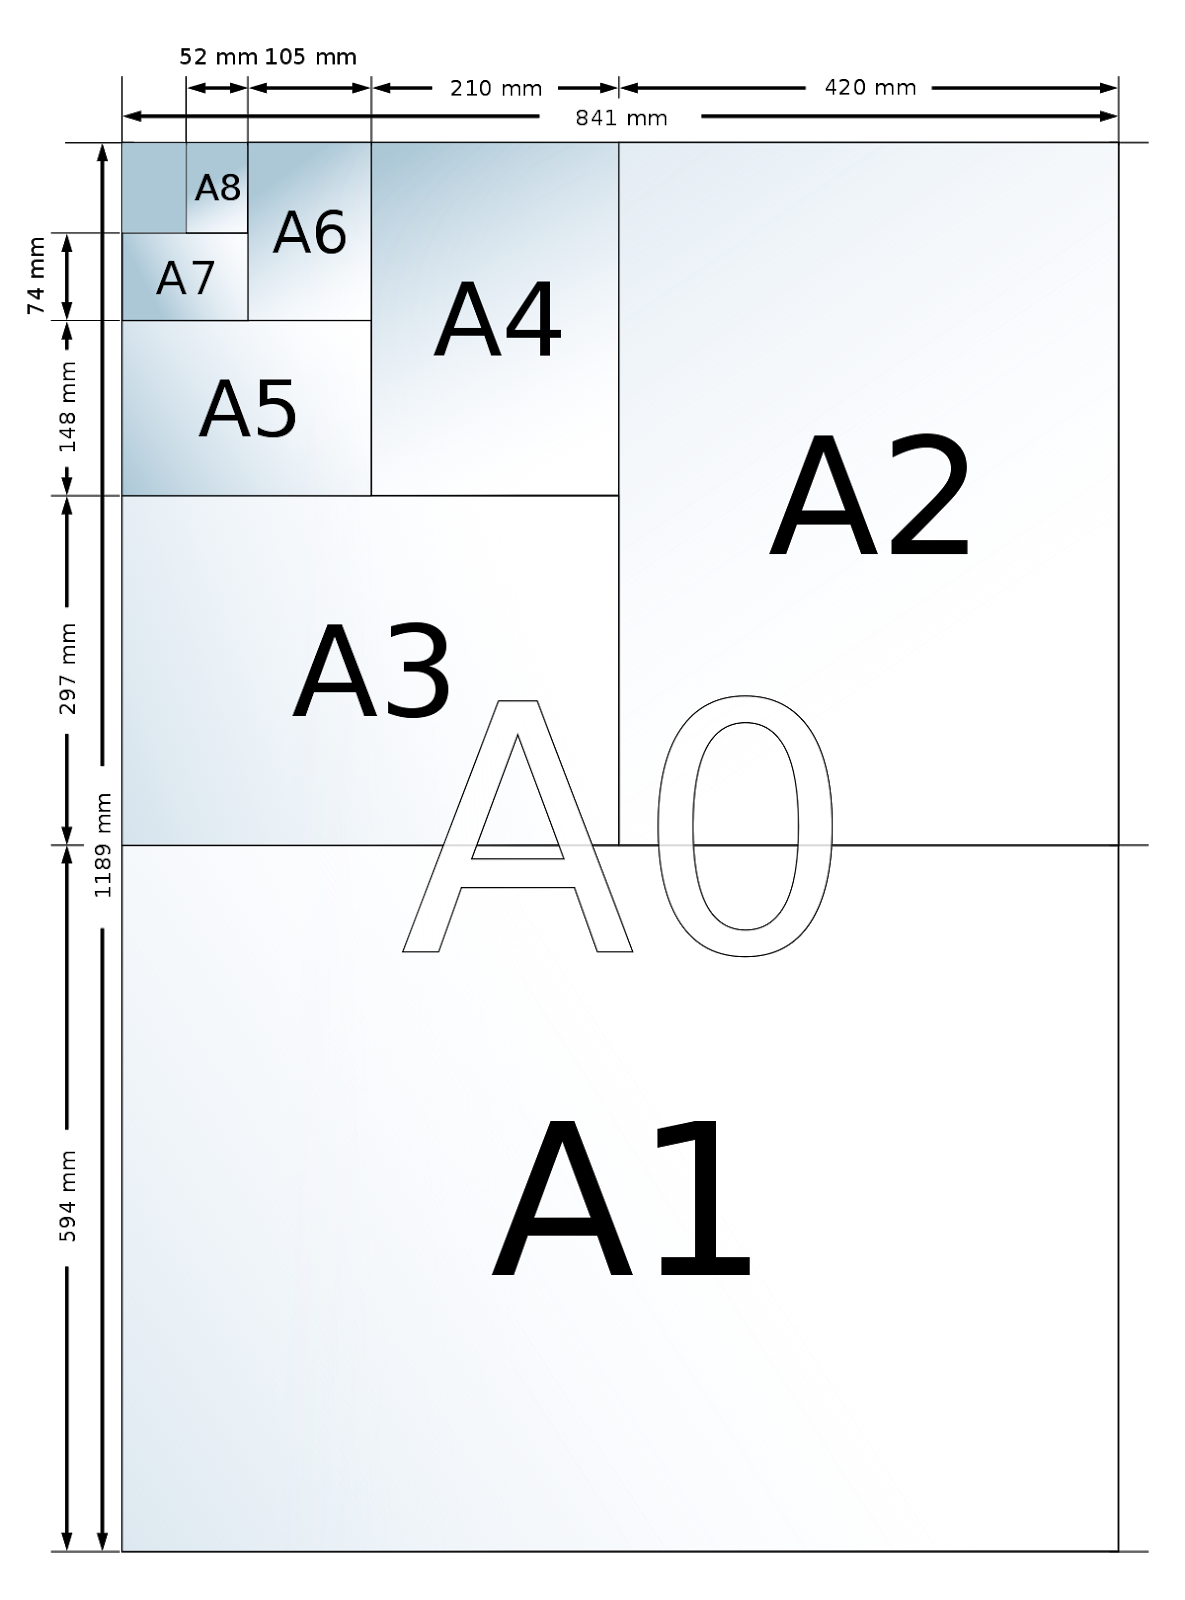 Kích thước của mẫu giấy A4 thịnh hành nhất